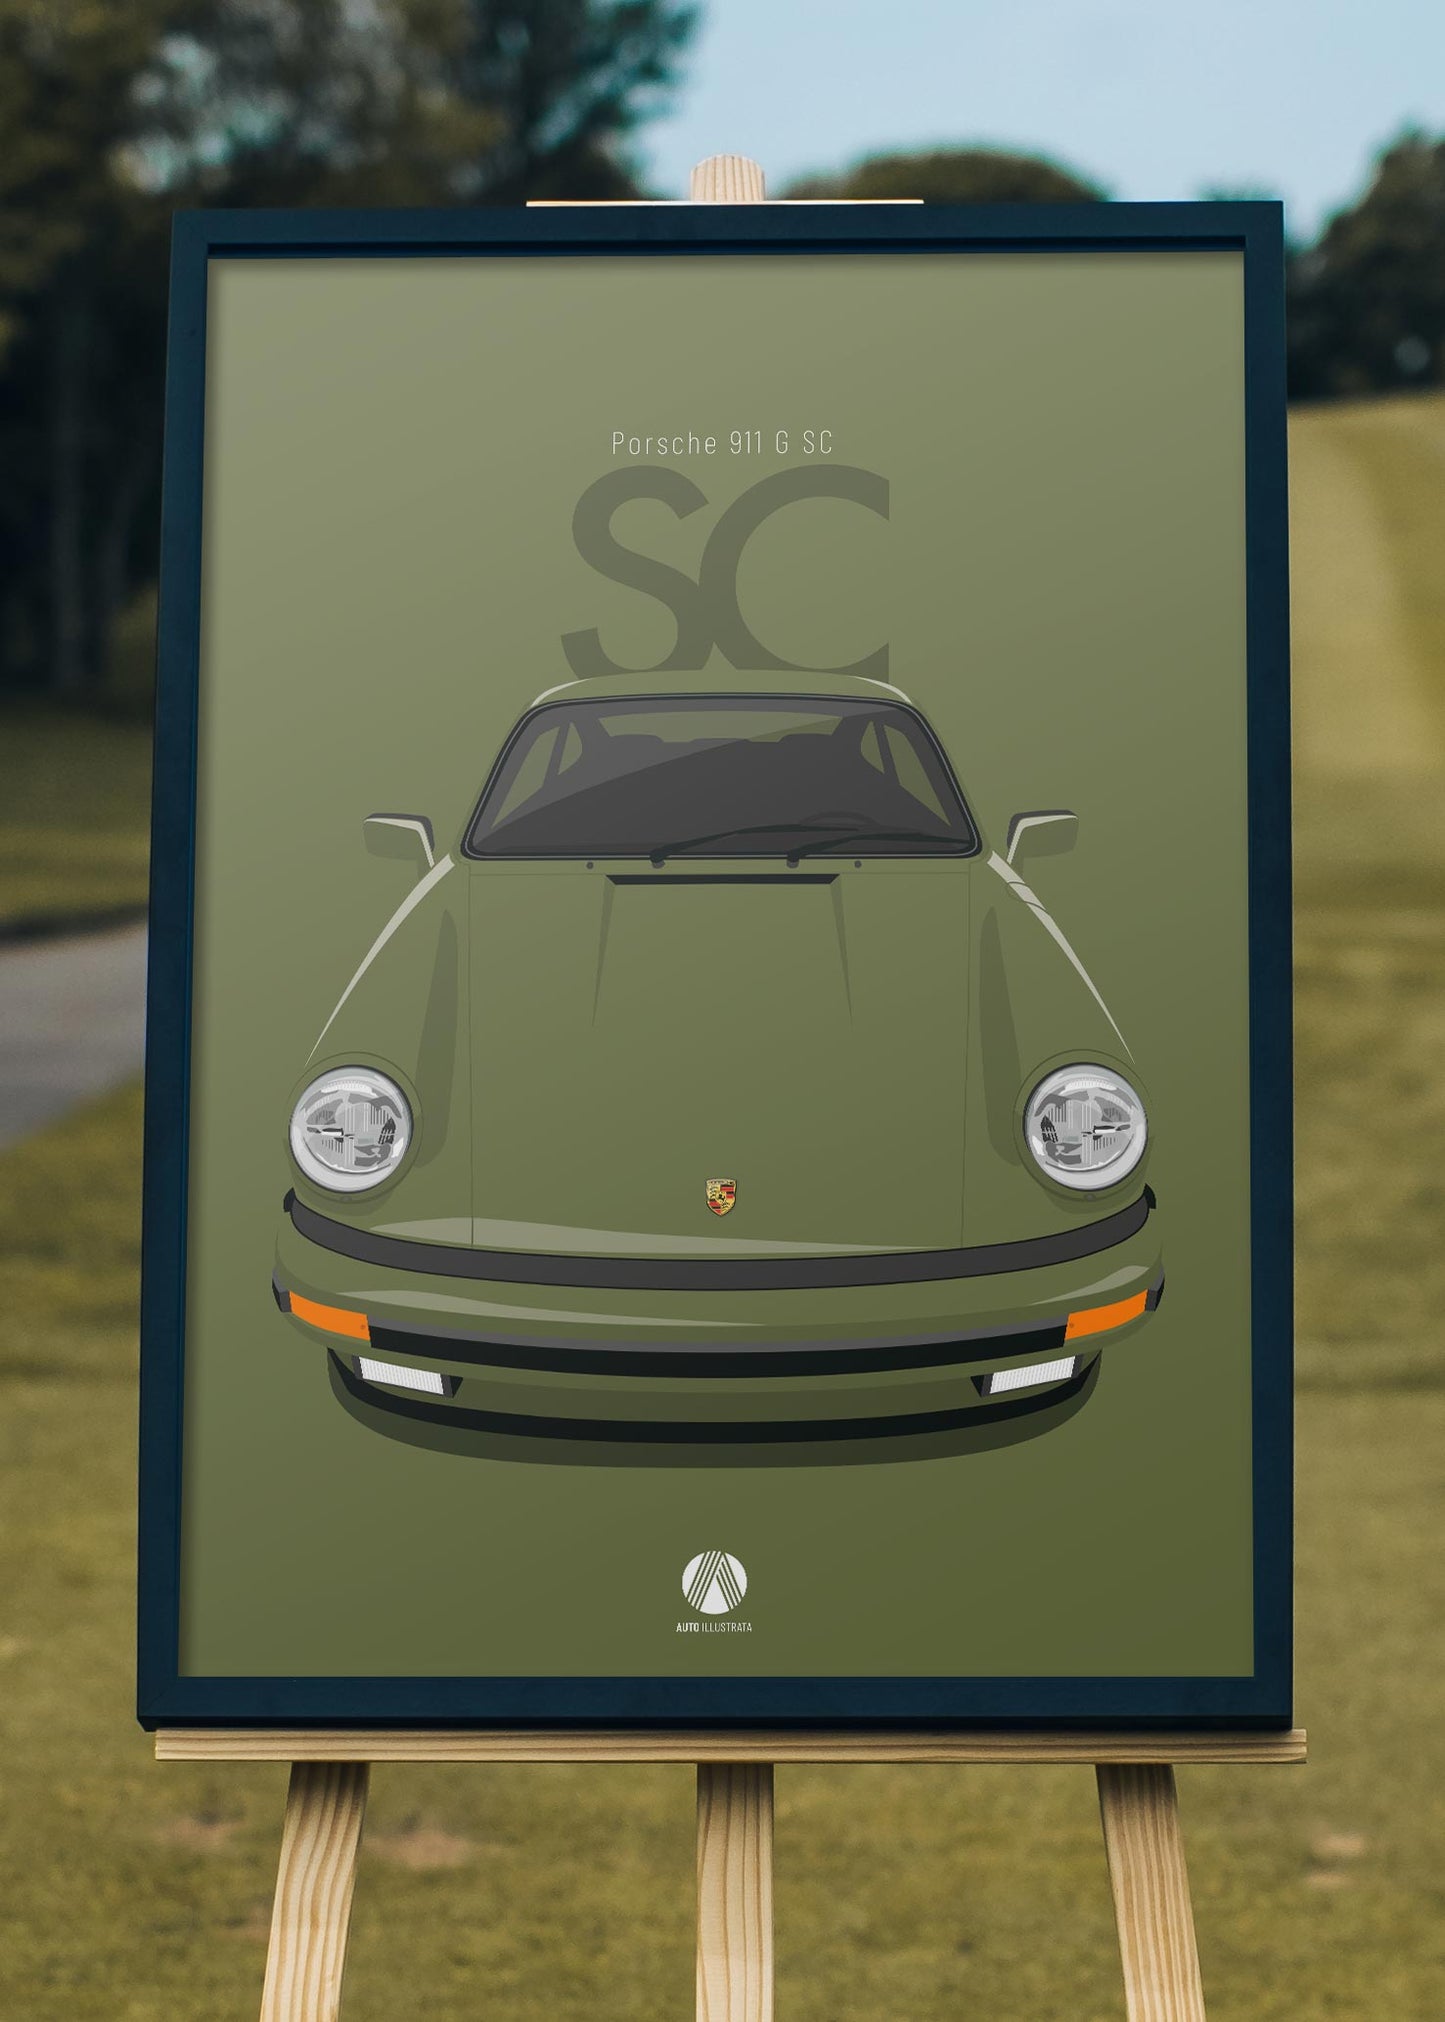 1979 Porsche 911 SC - 274 Olivegruen - poster print